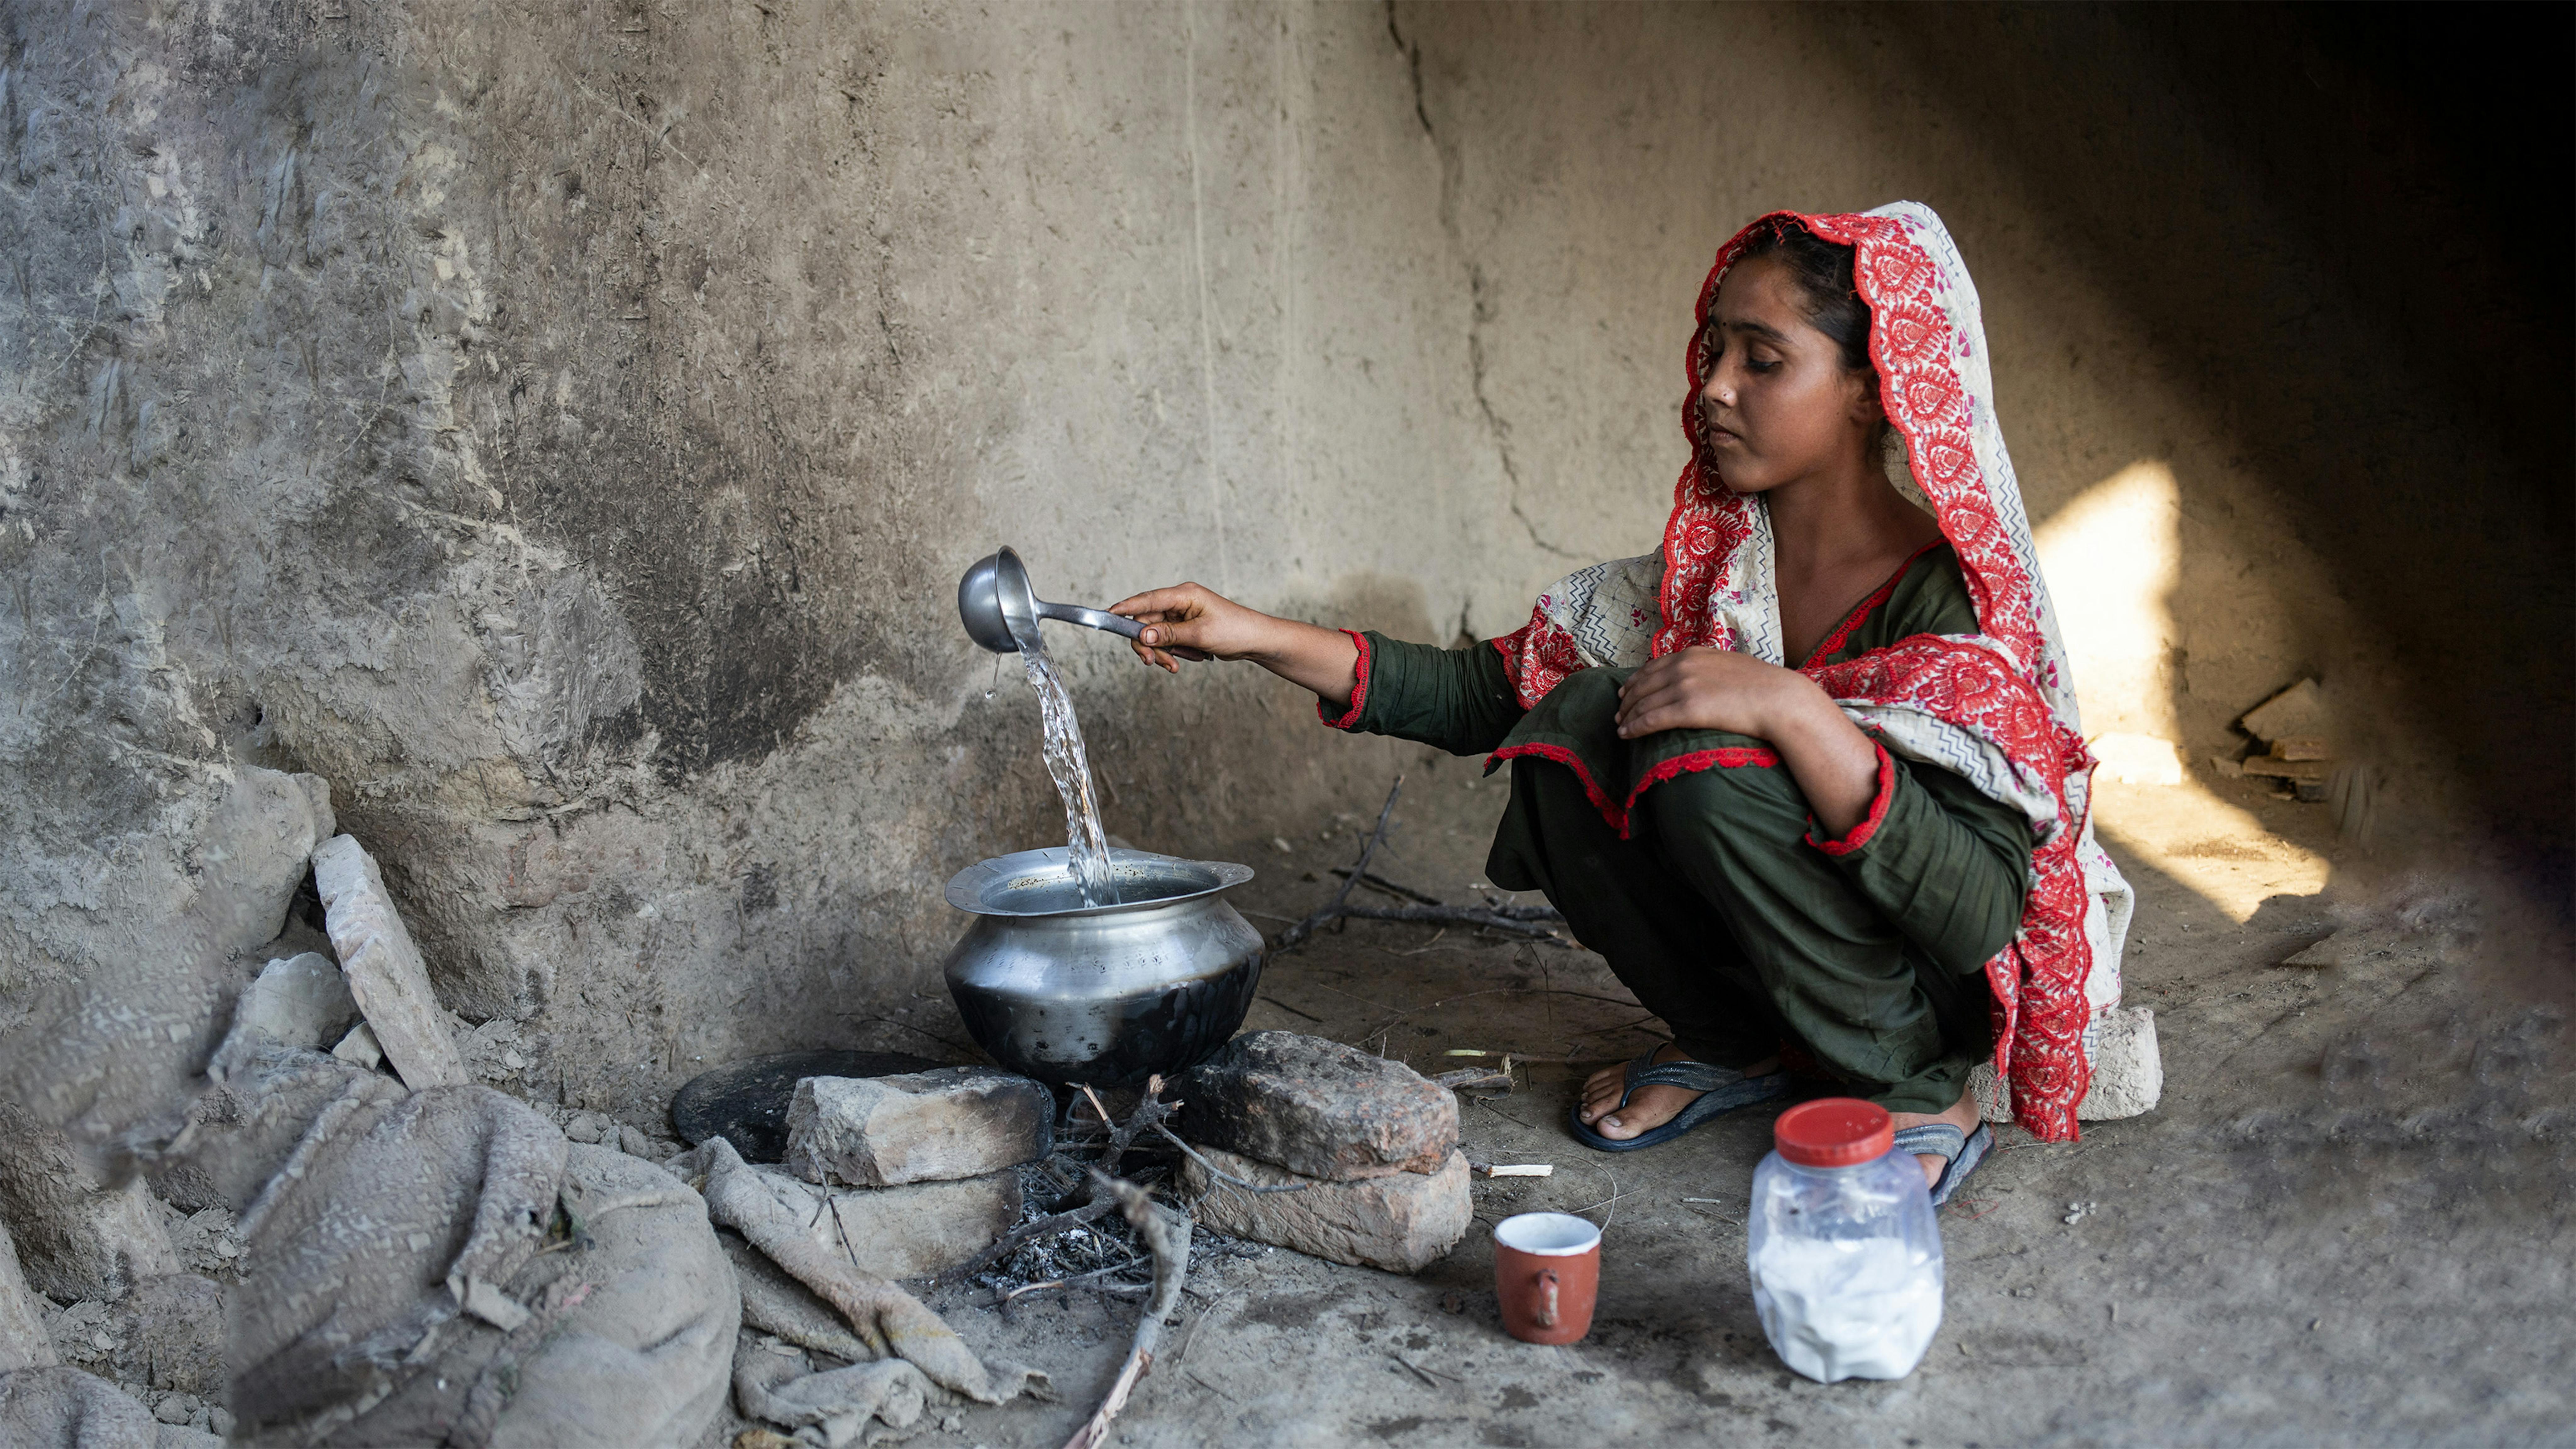 Pakistan - Sugrah, 15 anni, raccoglie l'acqua. La sua casa è stata distrutta dalle recenti inondazioni